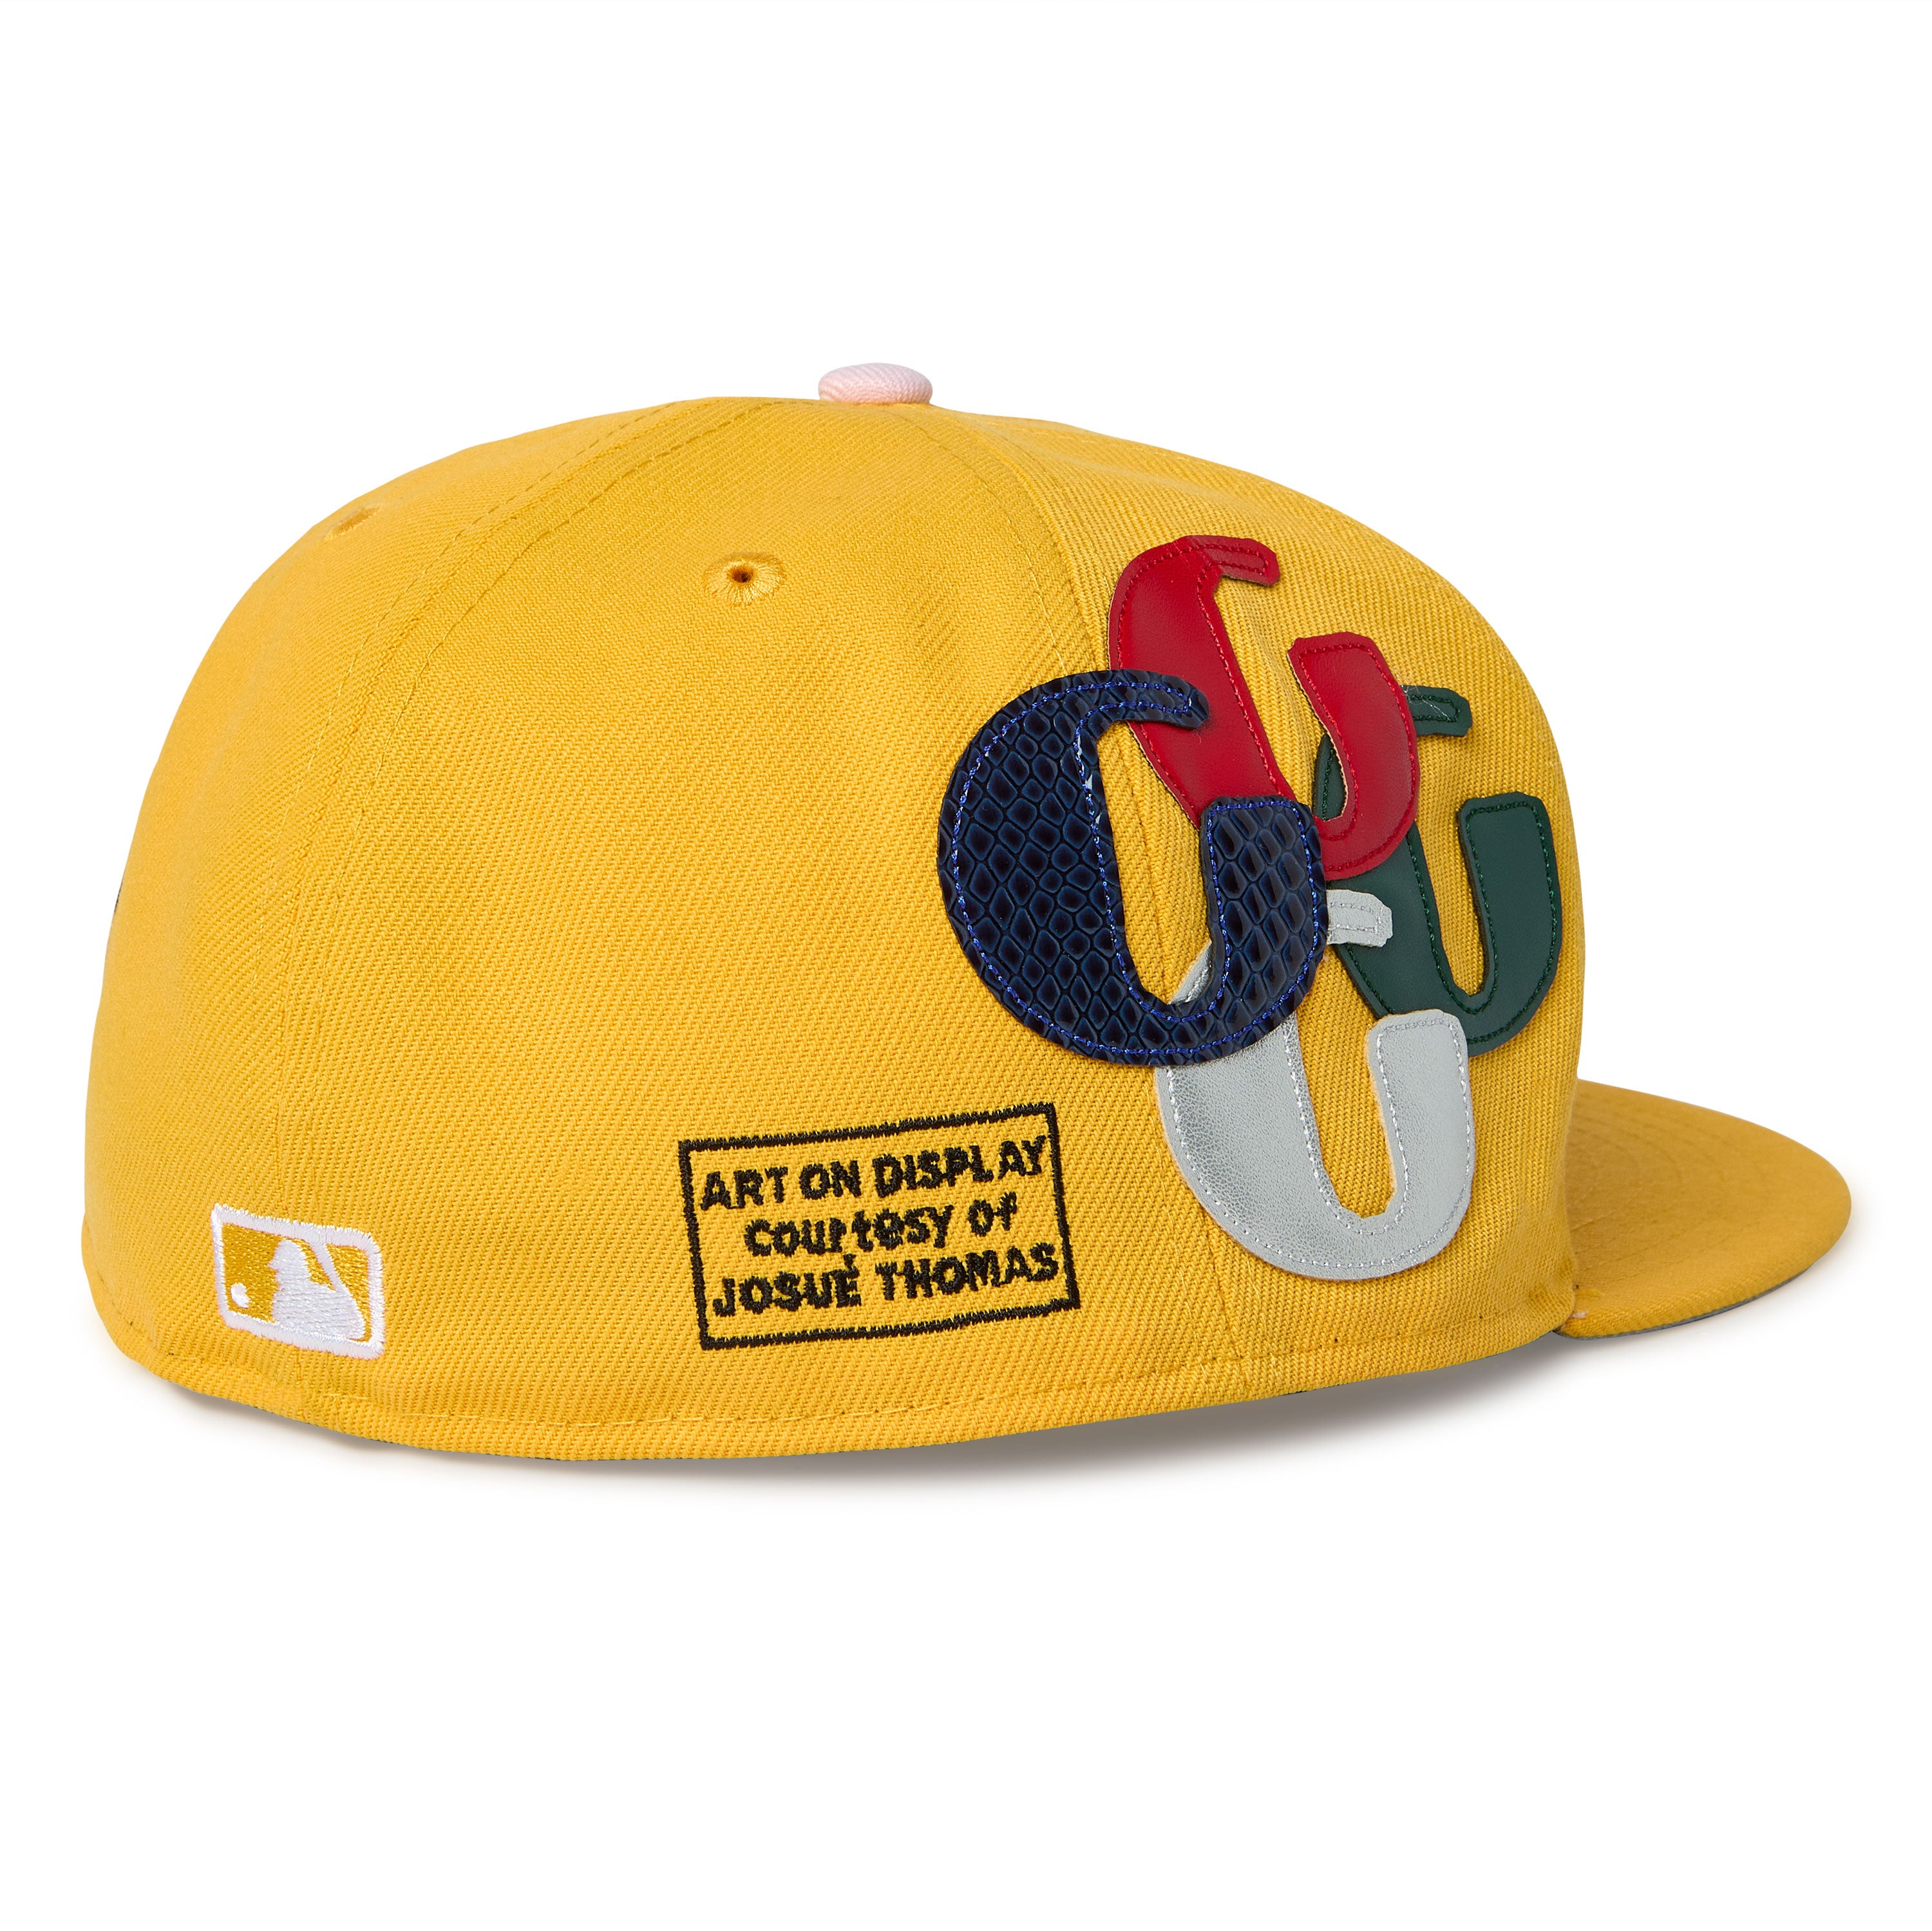 New Era, New Era Hats & Caps Online